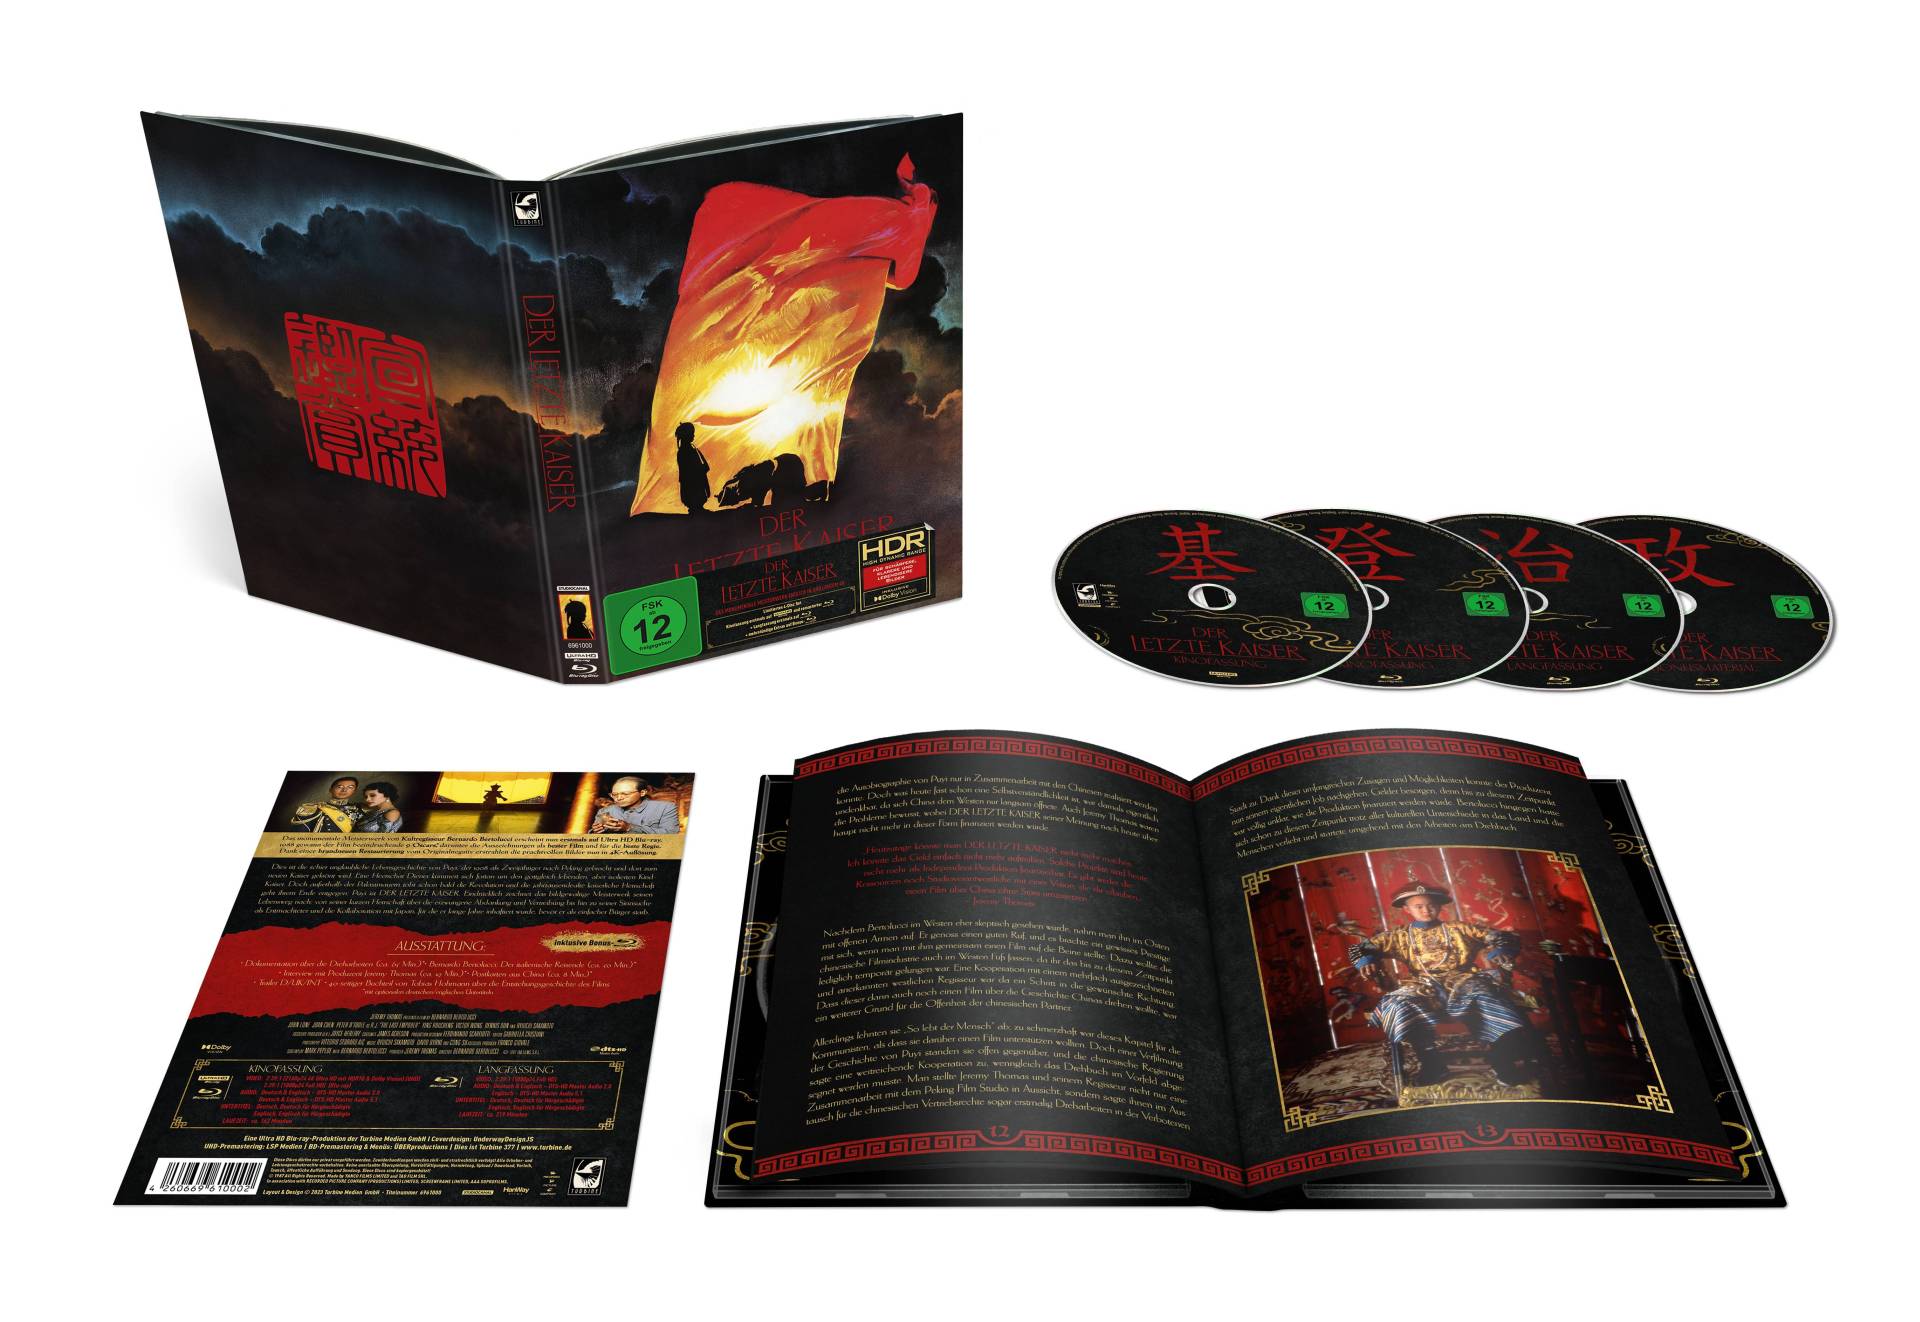 Der letzte Kaiser | Limitiertes Mediabook (4K Ultra HD Blu-ray + 3 Blu-rays) Cover A (600 Stück)